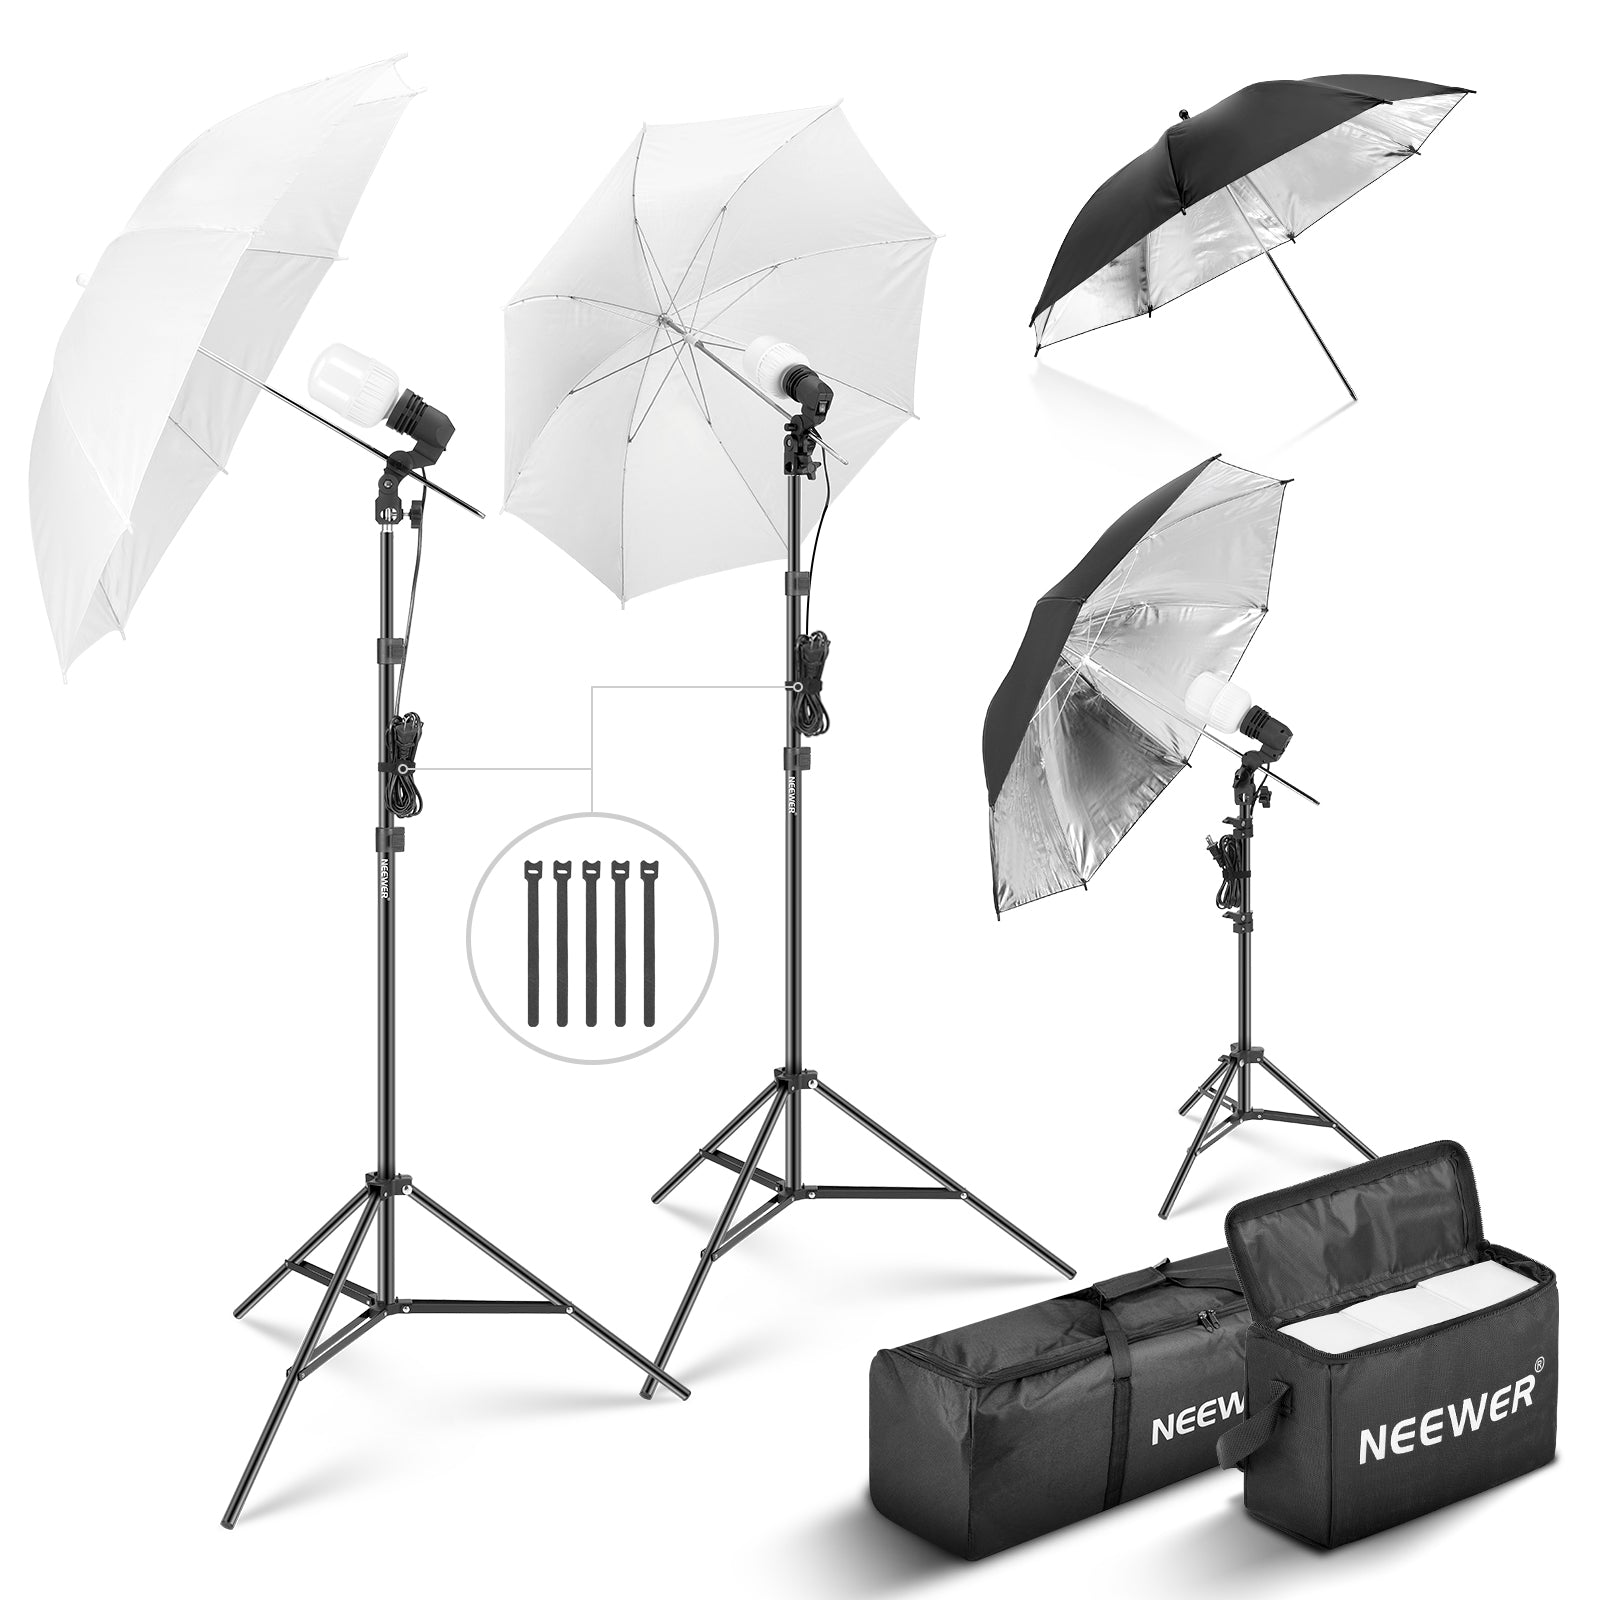 NEEWER Kit Studio Photo et éclairage, 2,6m x 3m Système de Support de Toile  de Fond, équivalent 800W 5700K Ampoules LED Parapluie Softbox éclairage  Continu pour Portrait et Photographie Vidéo : 